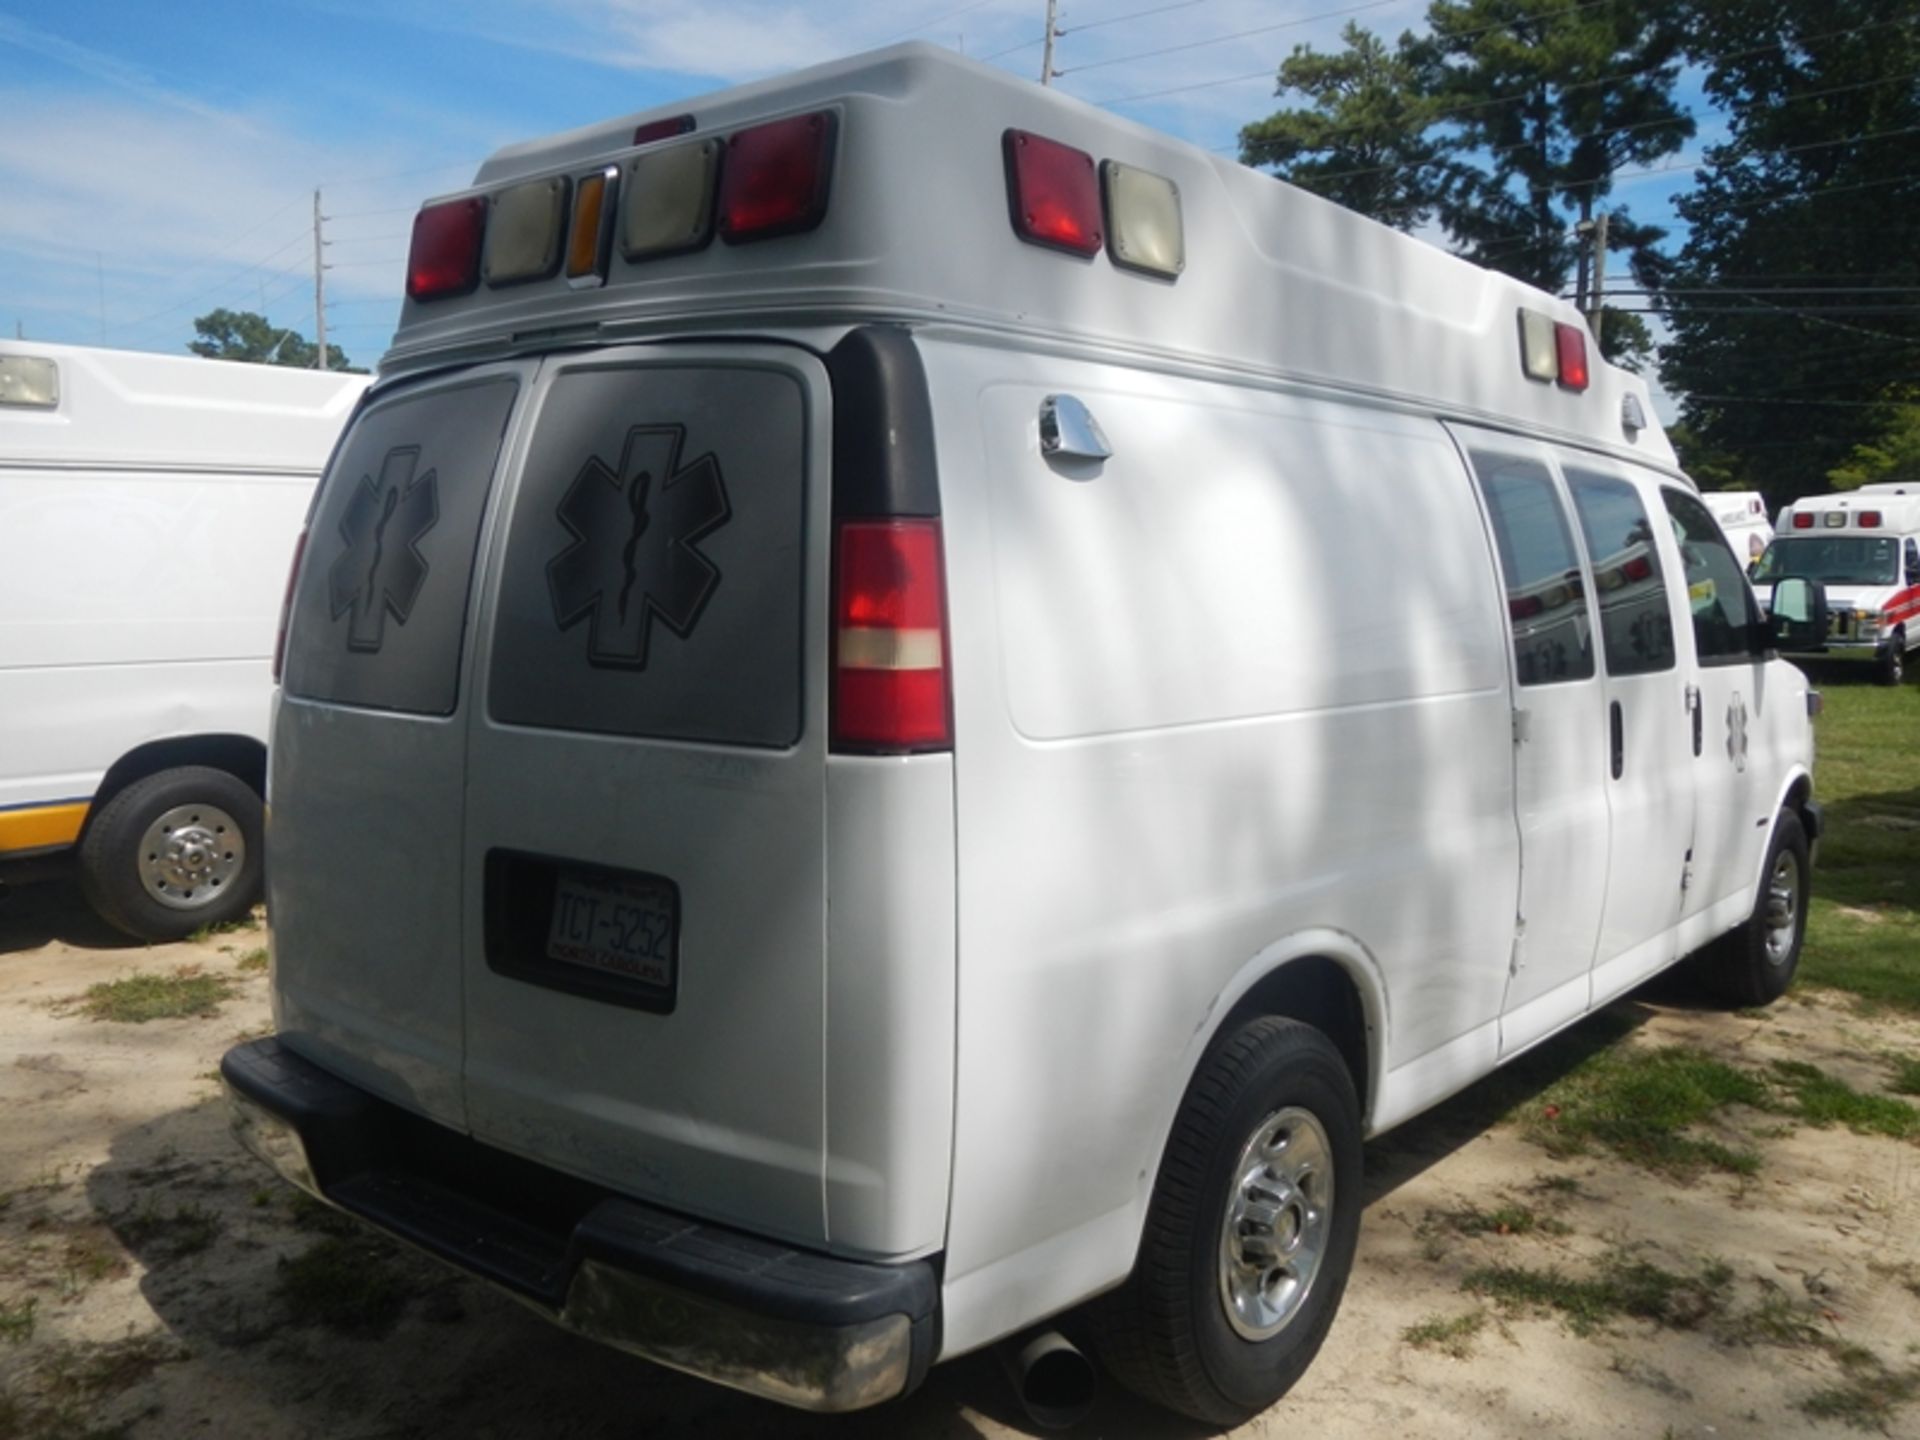 2009 CHEVROLET G-3500 Type II Ambulance 206,920 miles - 1GBHG396491168372 - Image 3 of 6